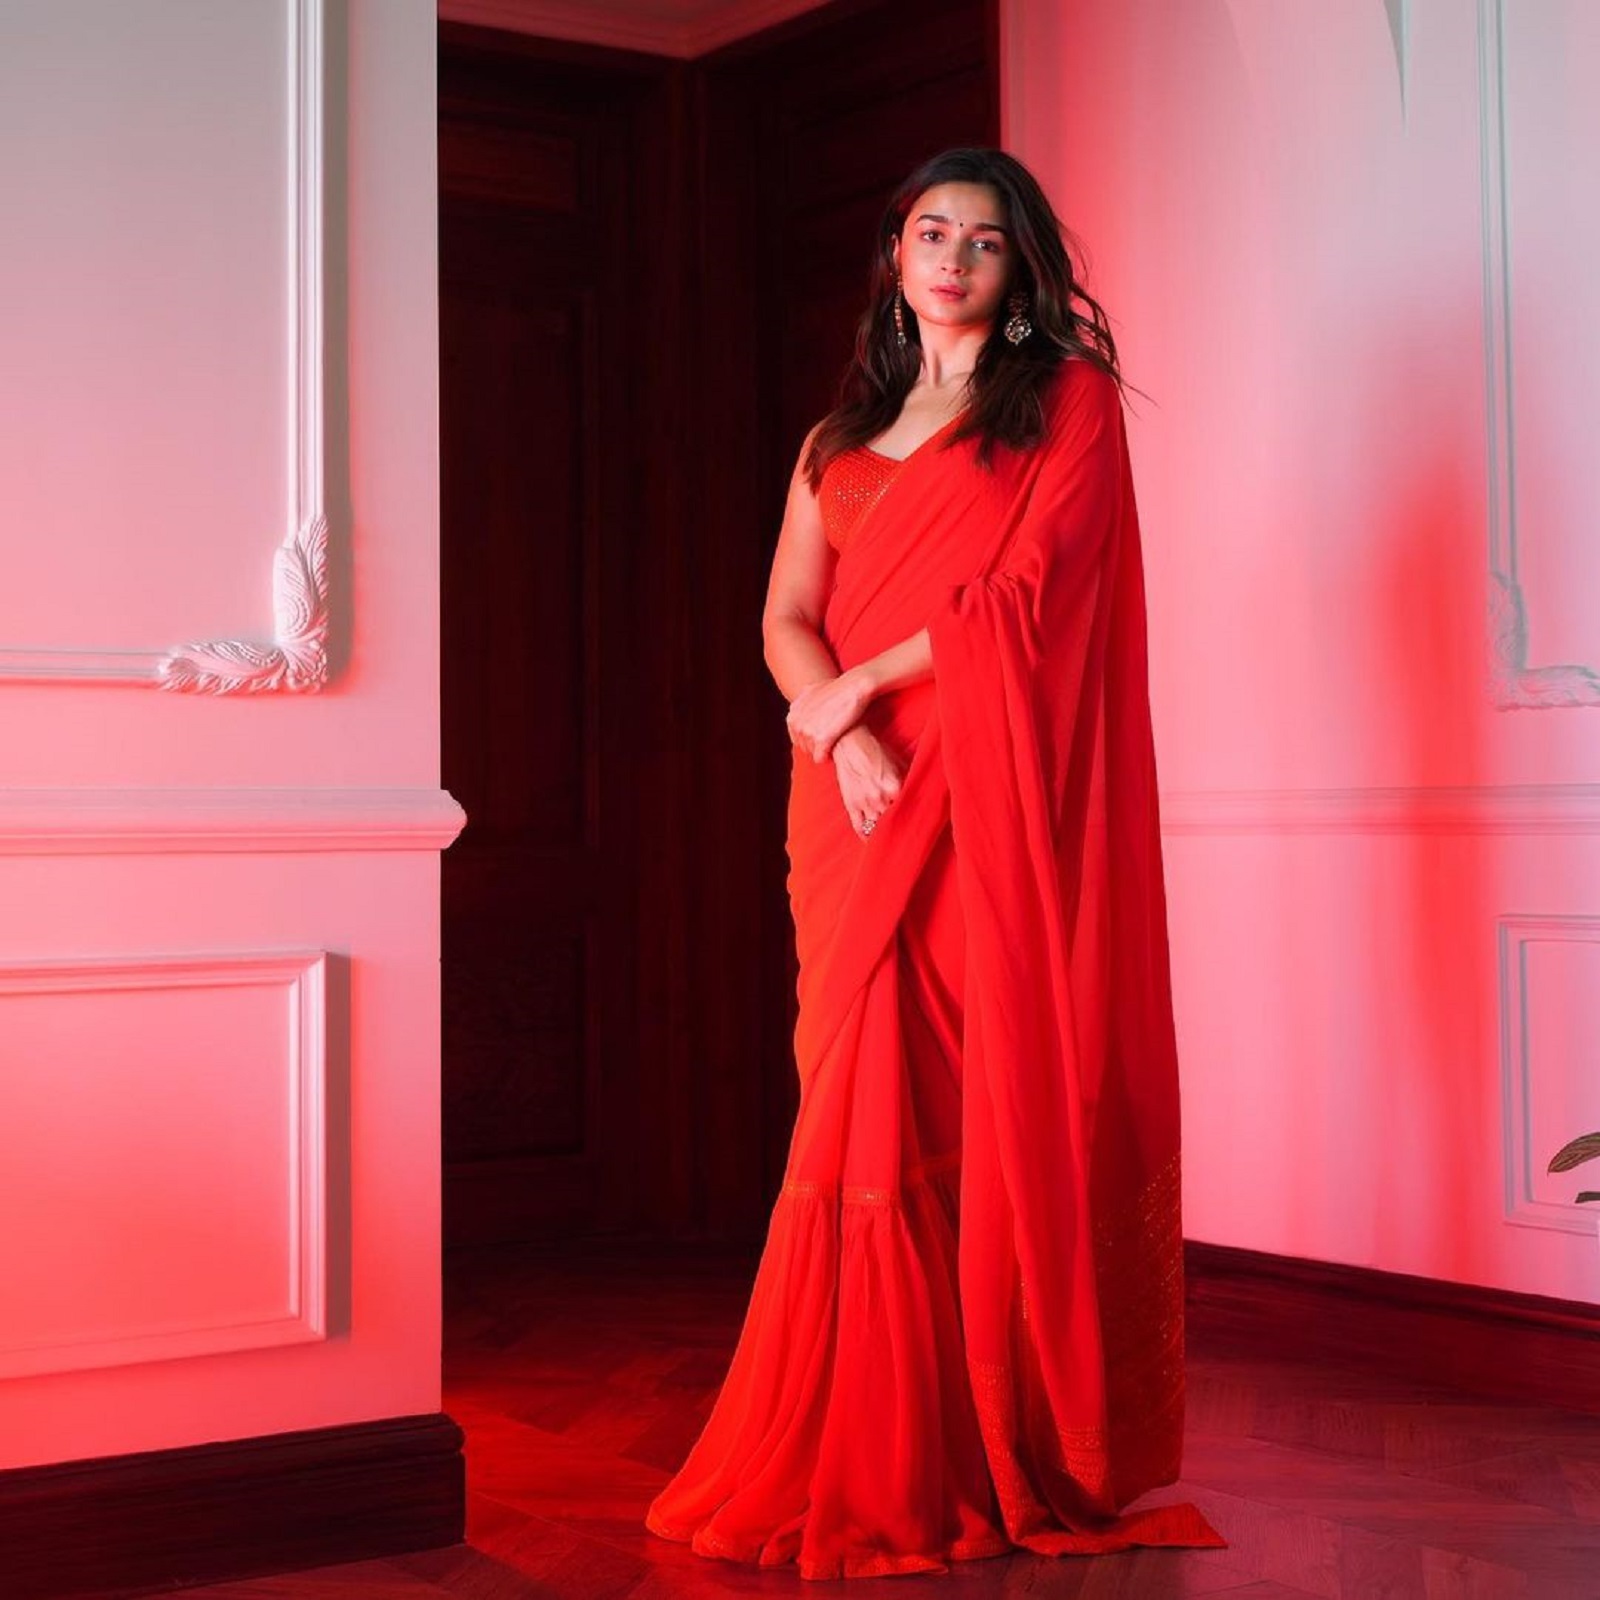  लाल रंग की यह लाल लहंगा साड़ी जाने माने ड्रेस डिजाइनर सब्‍यसाची (Sabyasachi) ने तैयार की है. वाकई इस ड्रेस में आलिया गॉर्जियस दिख रही हैं. Image : Instagram/stylebyami